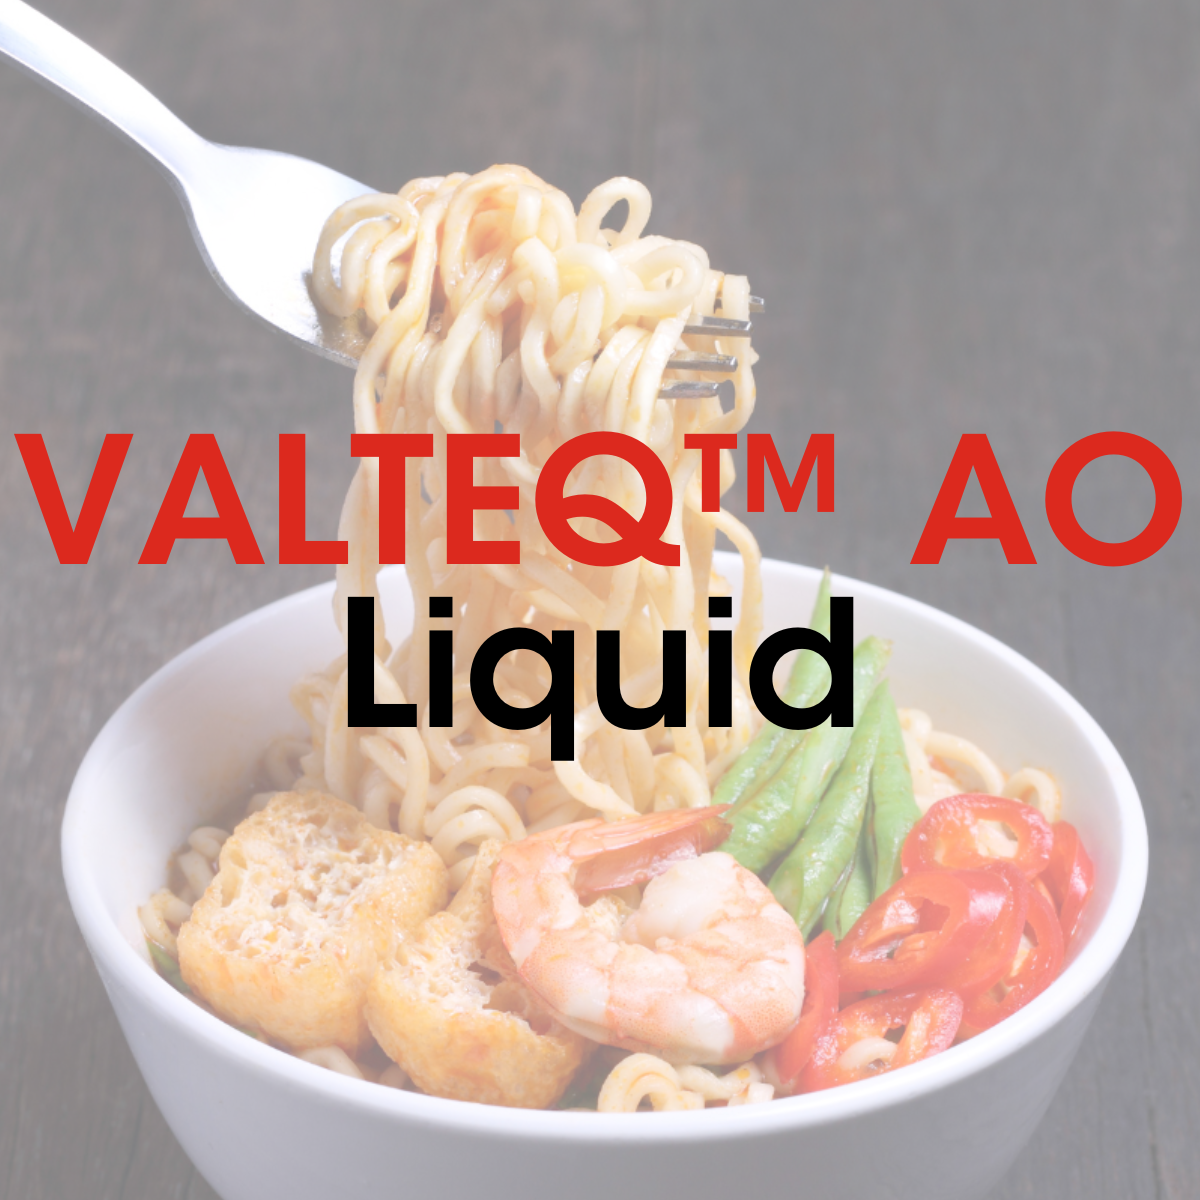 VALTEQ™ AO Liquid